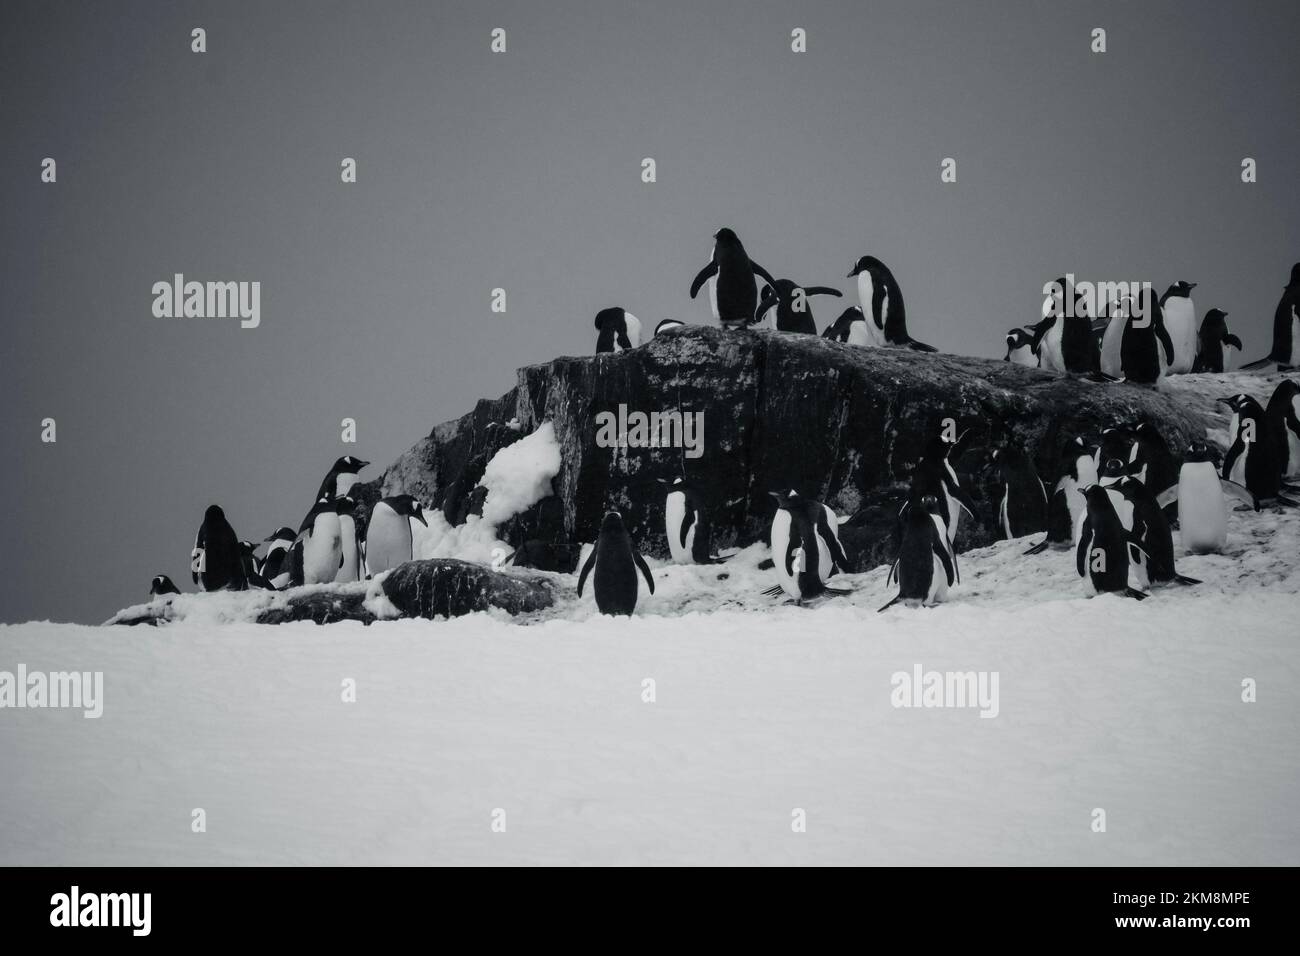 Una pandilla de pingüinos se reunieron en la única zona sin nieve. Preparándose para anidar y tener pingüinos bebé. Foto de stock